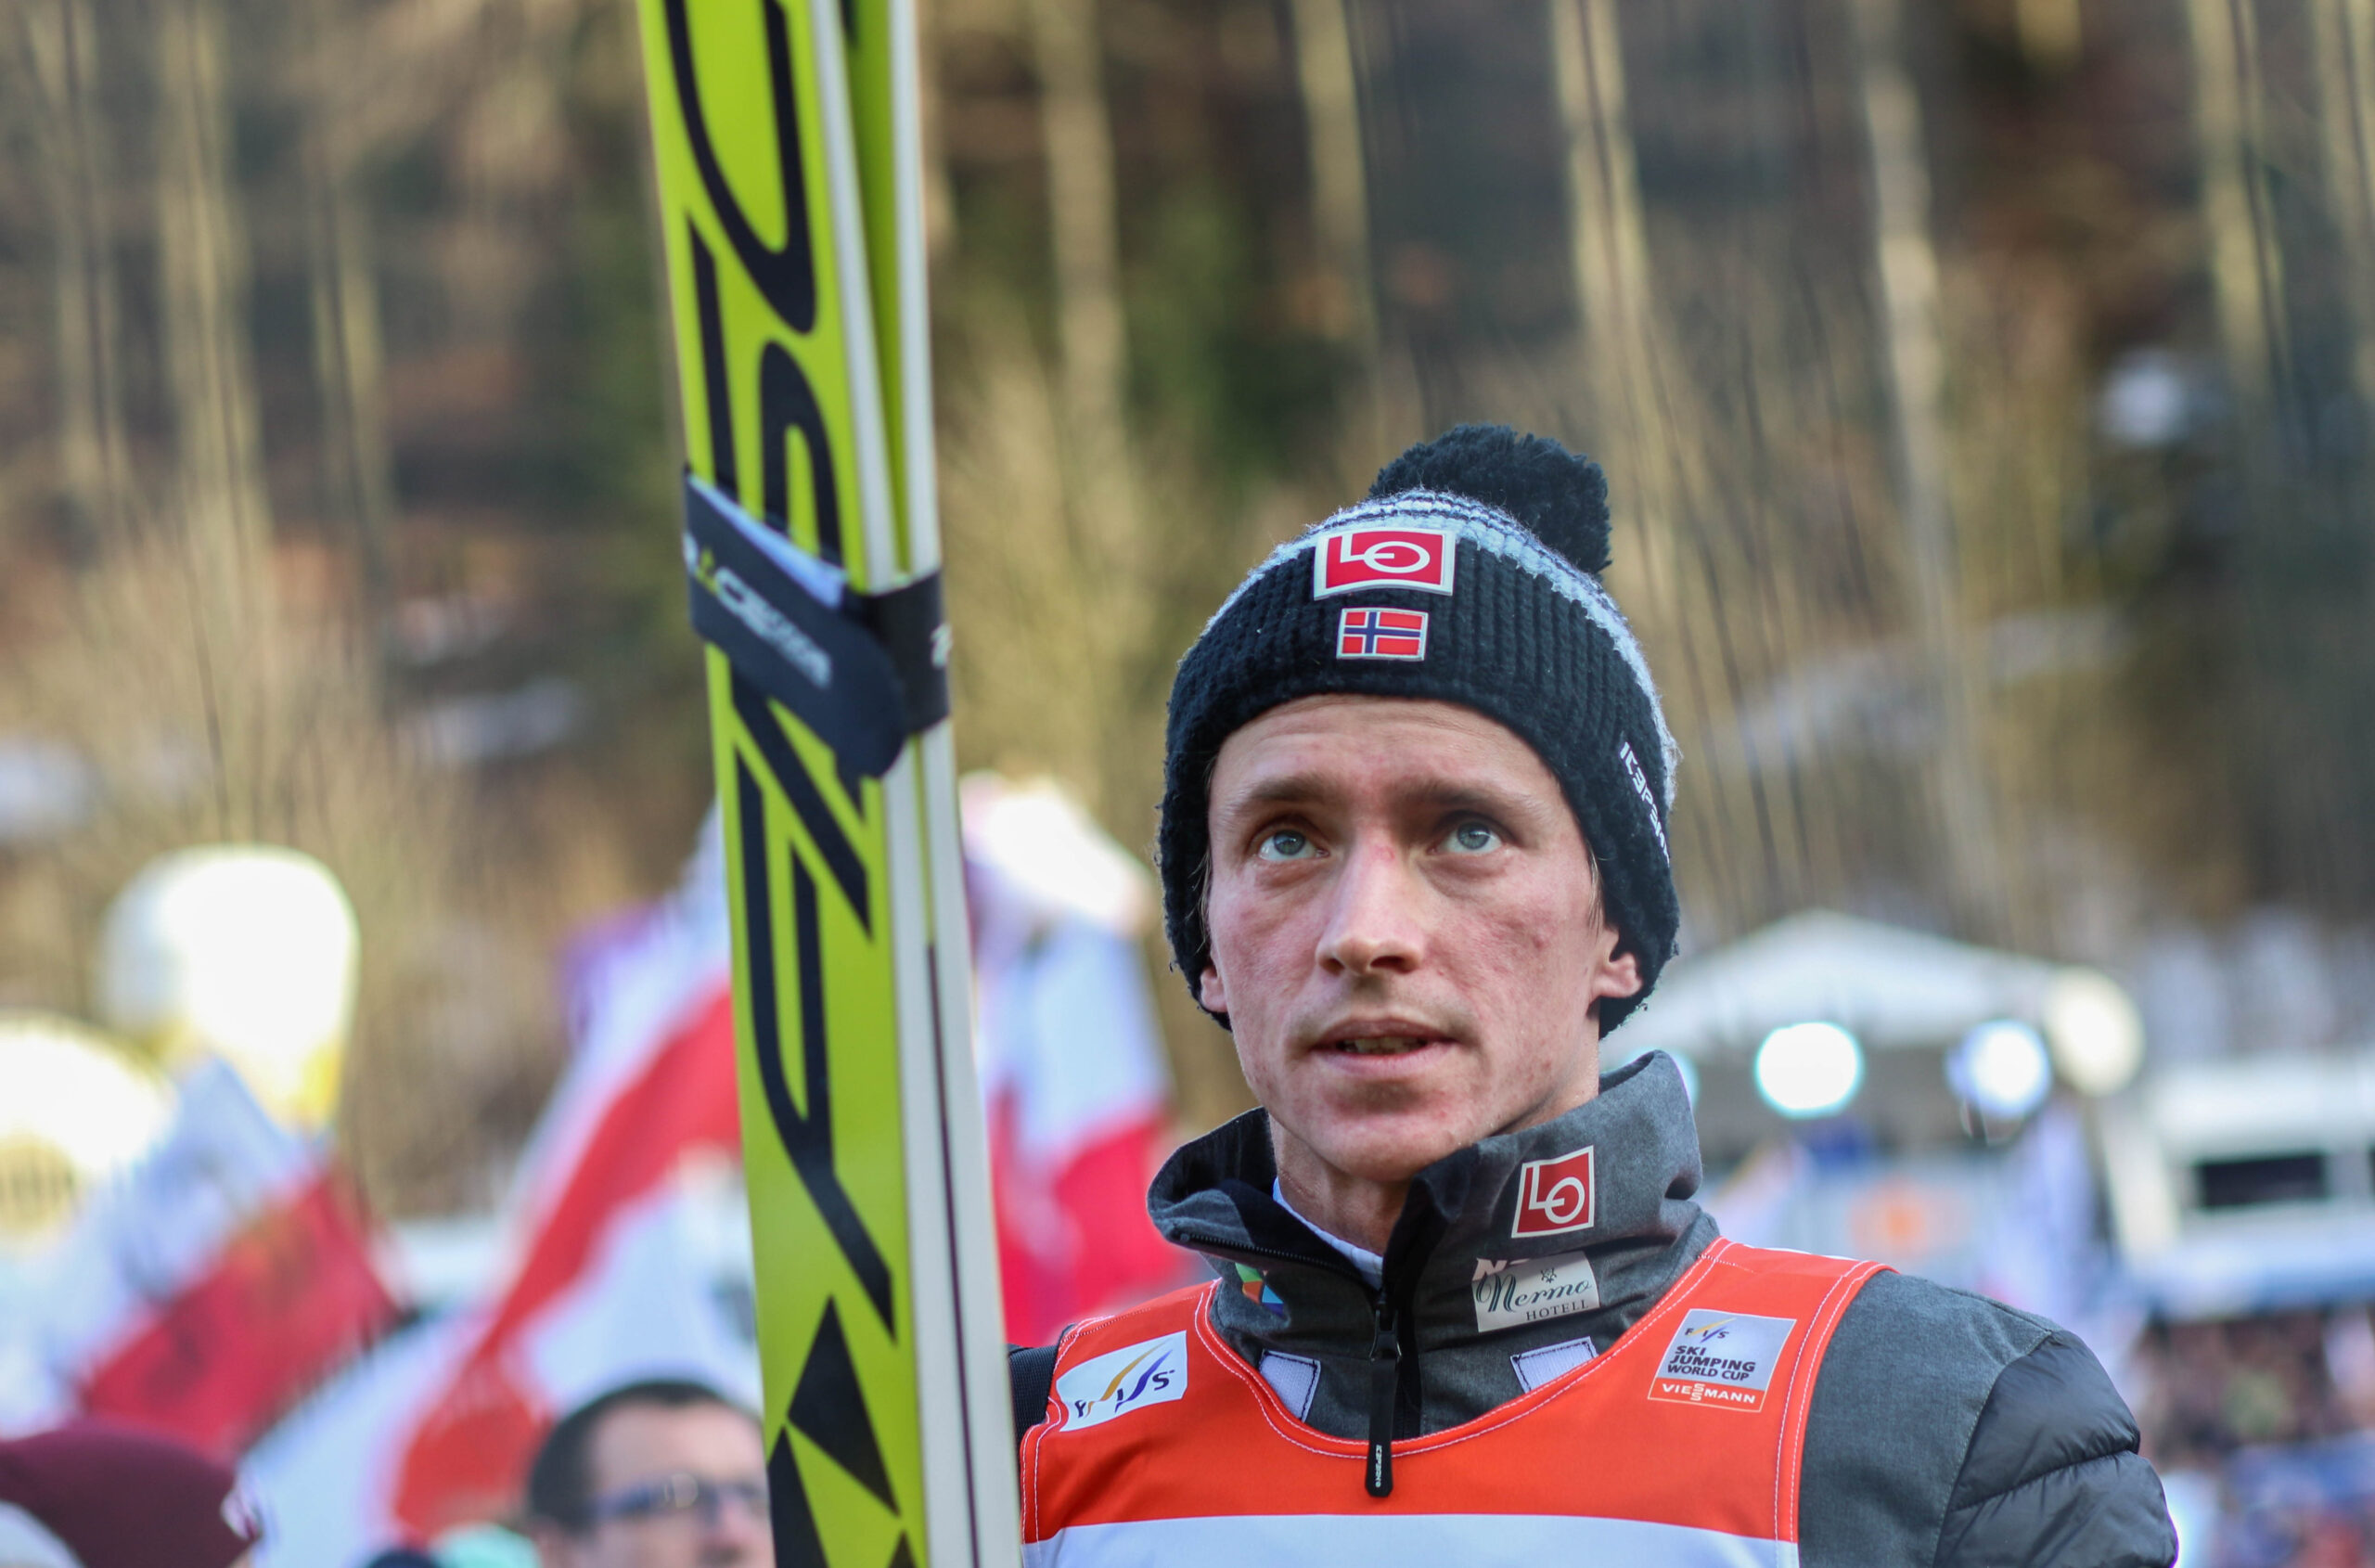 Norwegisches Team steht: Anders Fannemel sichert sich Weltcup-Startplatz